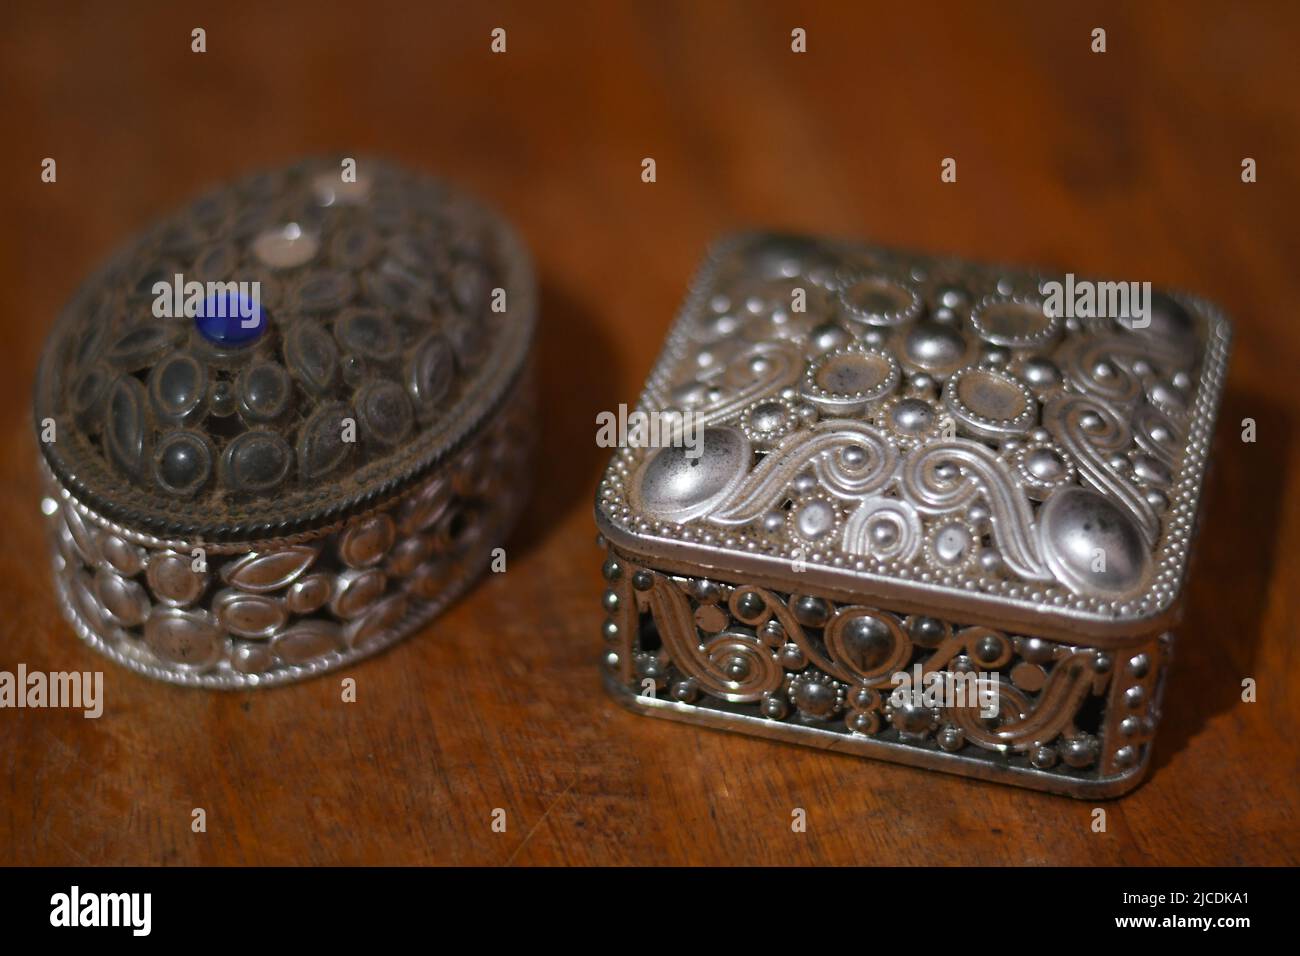 Deux coffrets à bijoux de culture arabe sont sur une table Banque D'Images